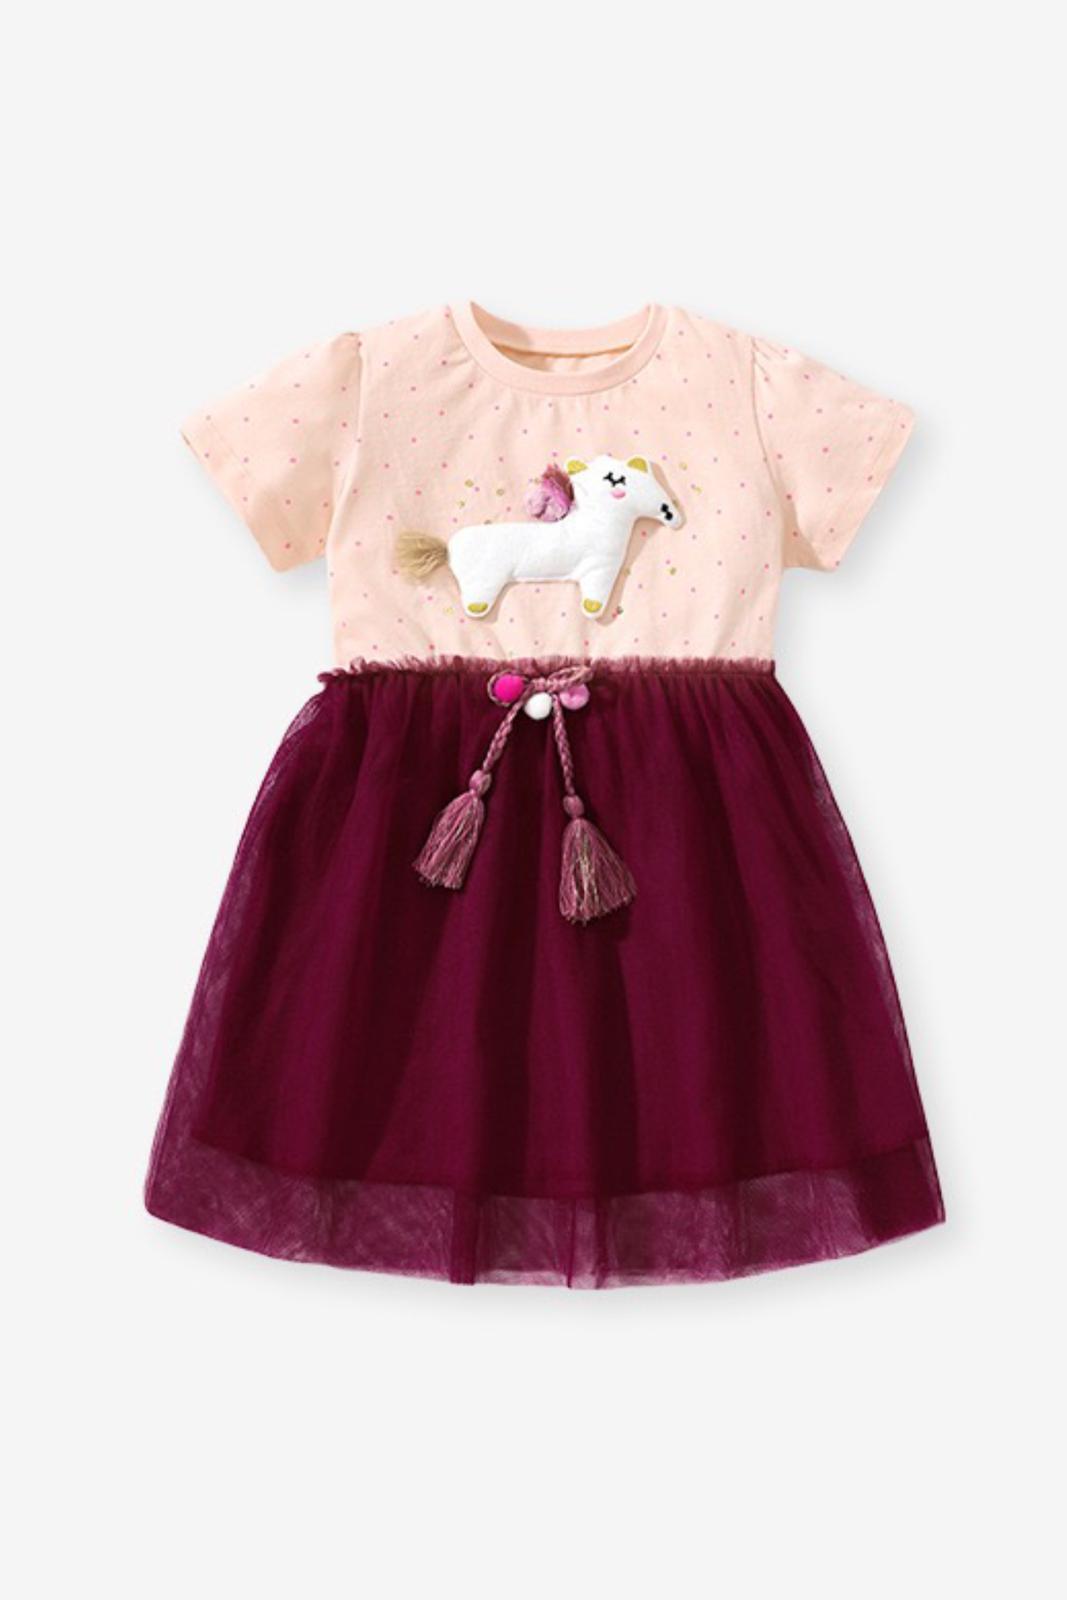 Cute unicorn Tutu Dress